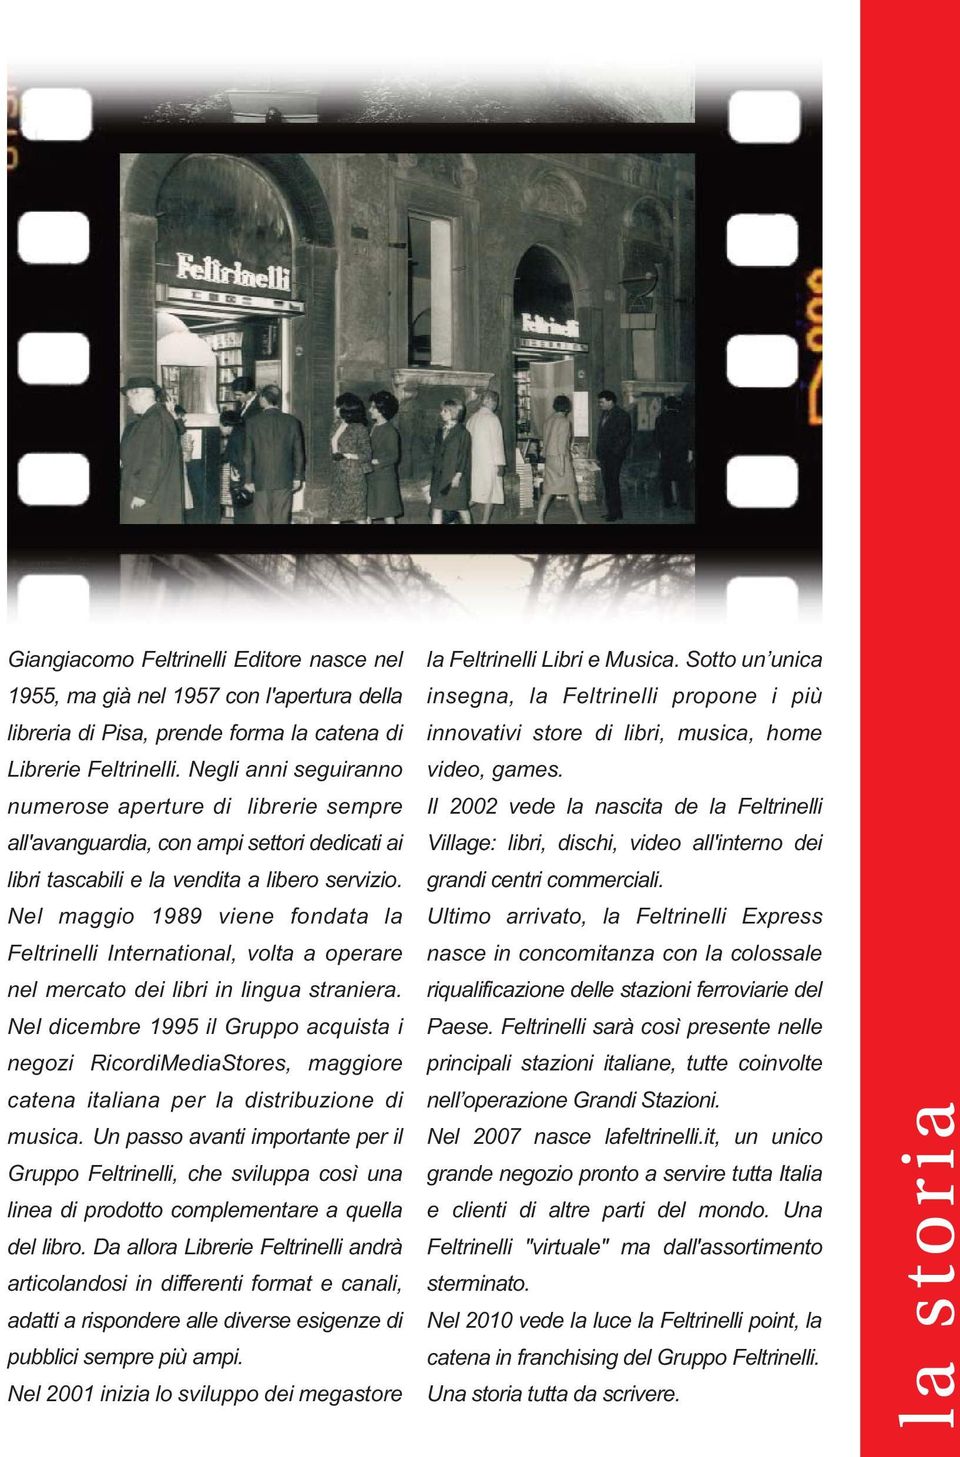 Nel maggio 1989 viene fondata la Feltrinelli International, volta a operare nel mercato dei libri in lingua straniera.